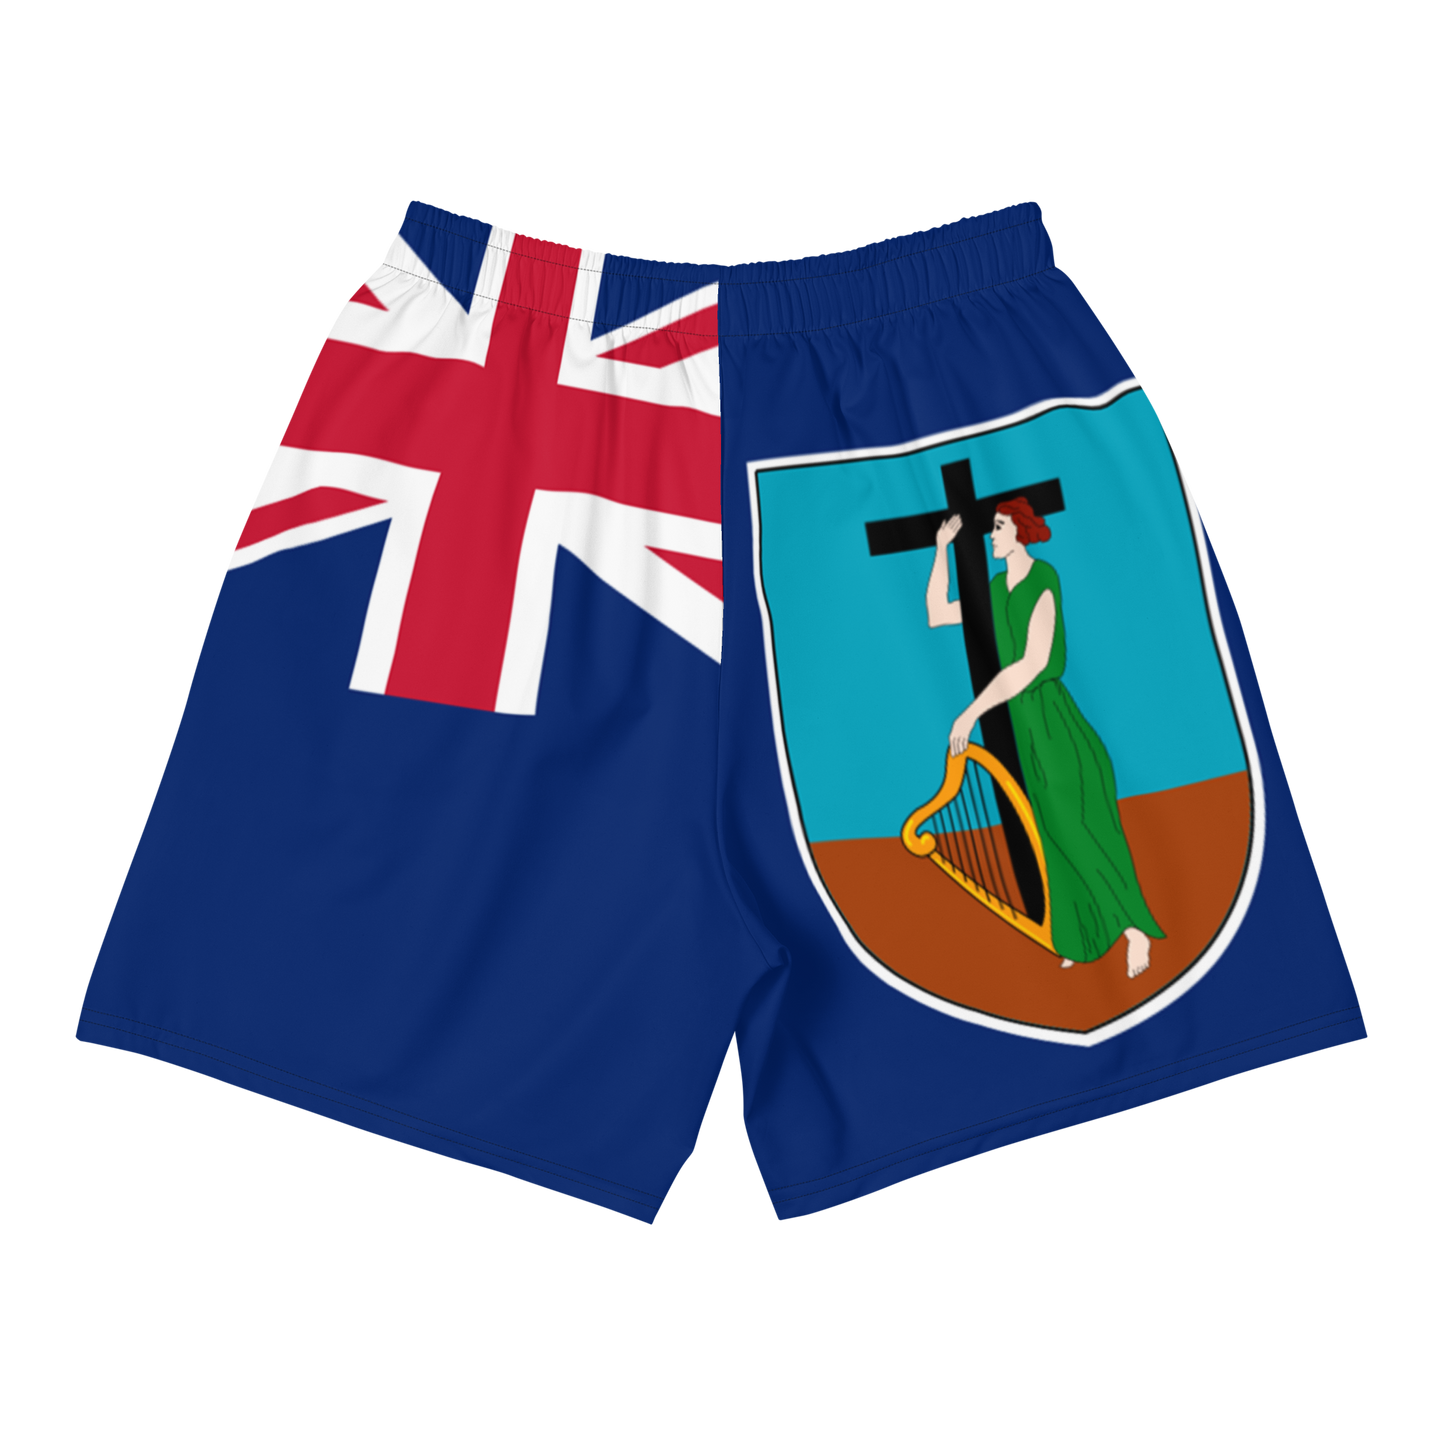 Montserrat Men's Athletic Shorts